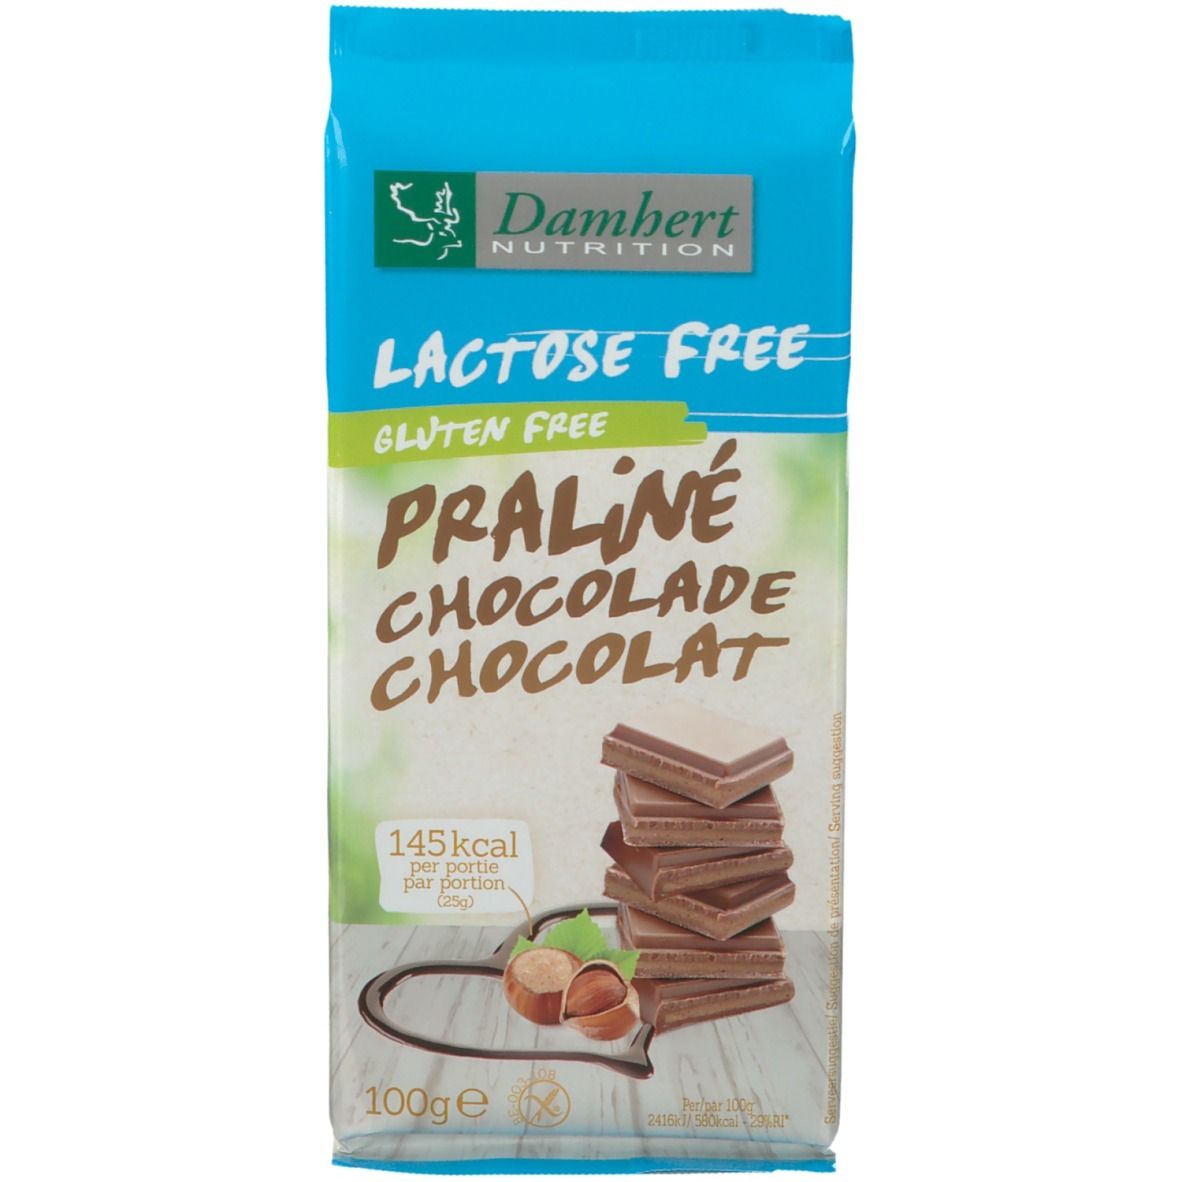 Damhert Lactose Free Tablette de chocolat praliné sans gluten